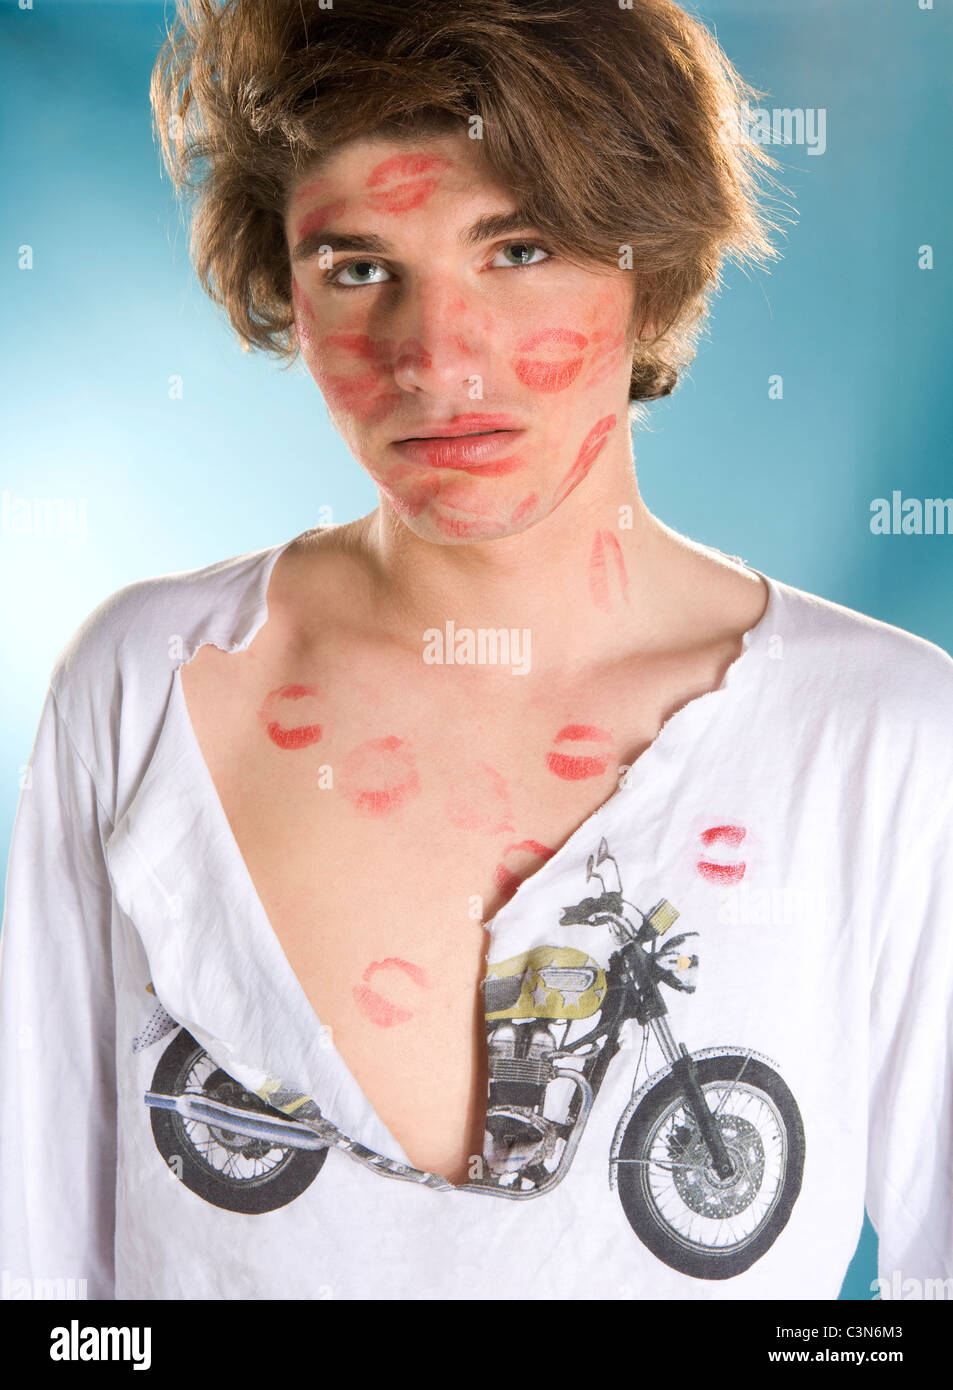 Jeune homme portrait,attaque kiss Banque D'Images